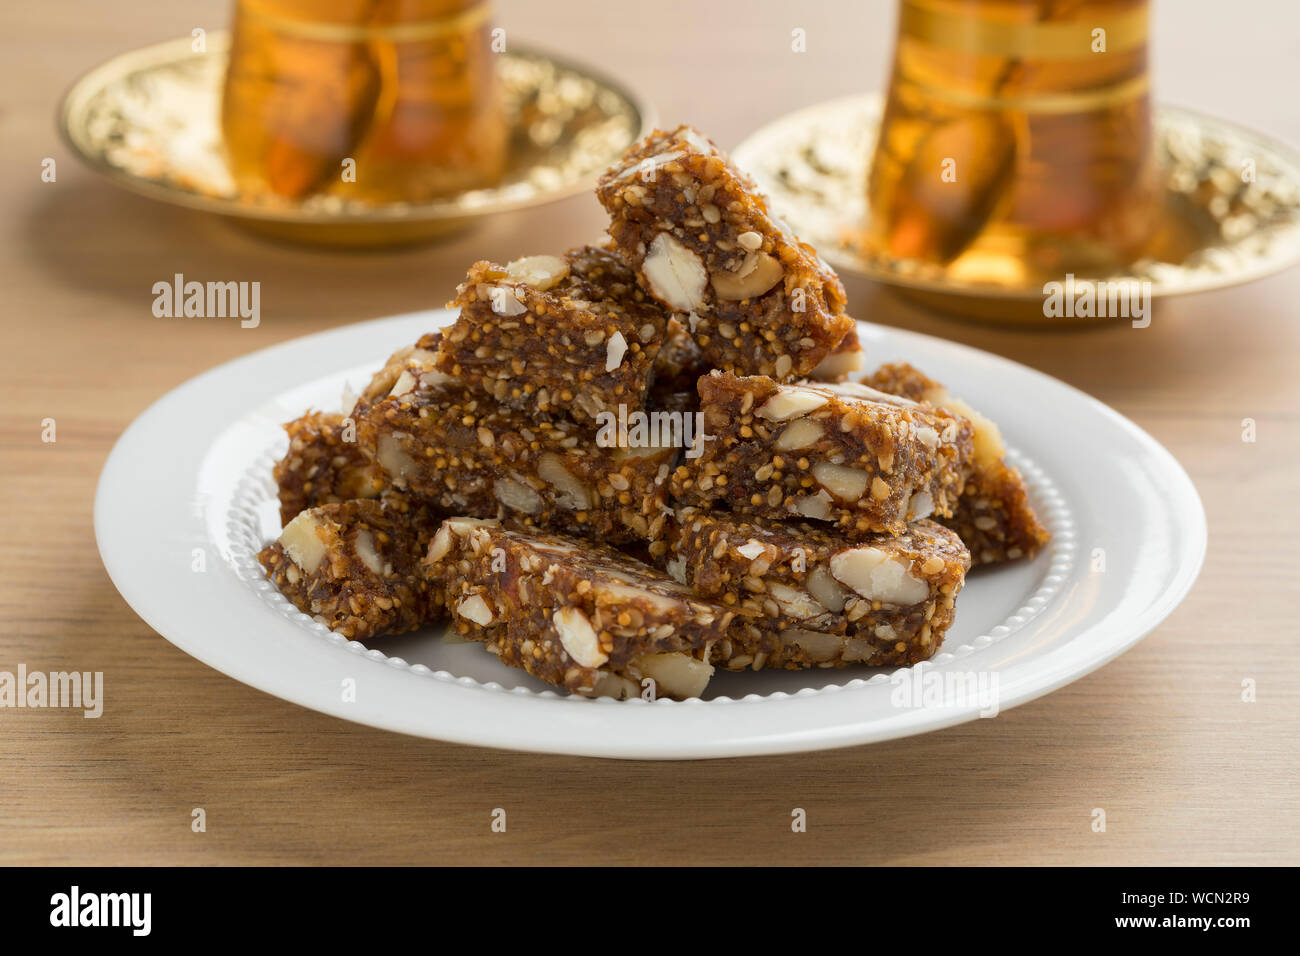 Turkish cake immagini e fotografie stock ad alta risoluzione - Alamy